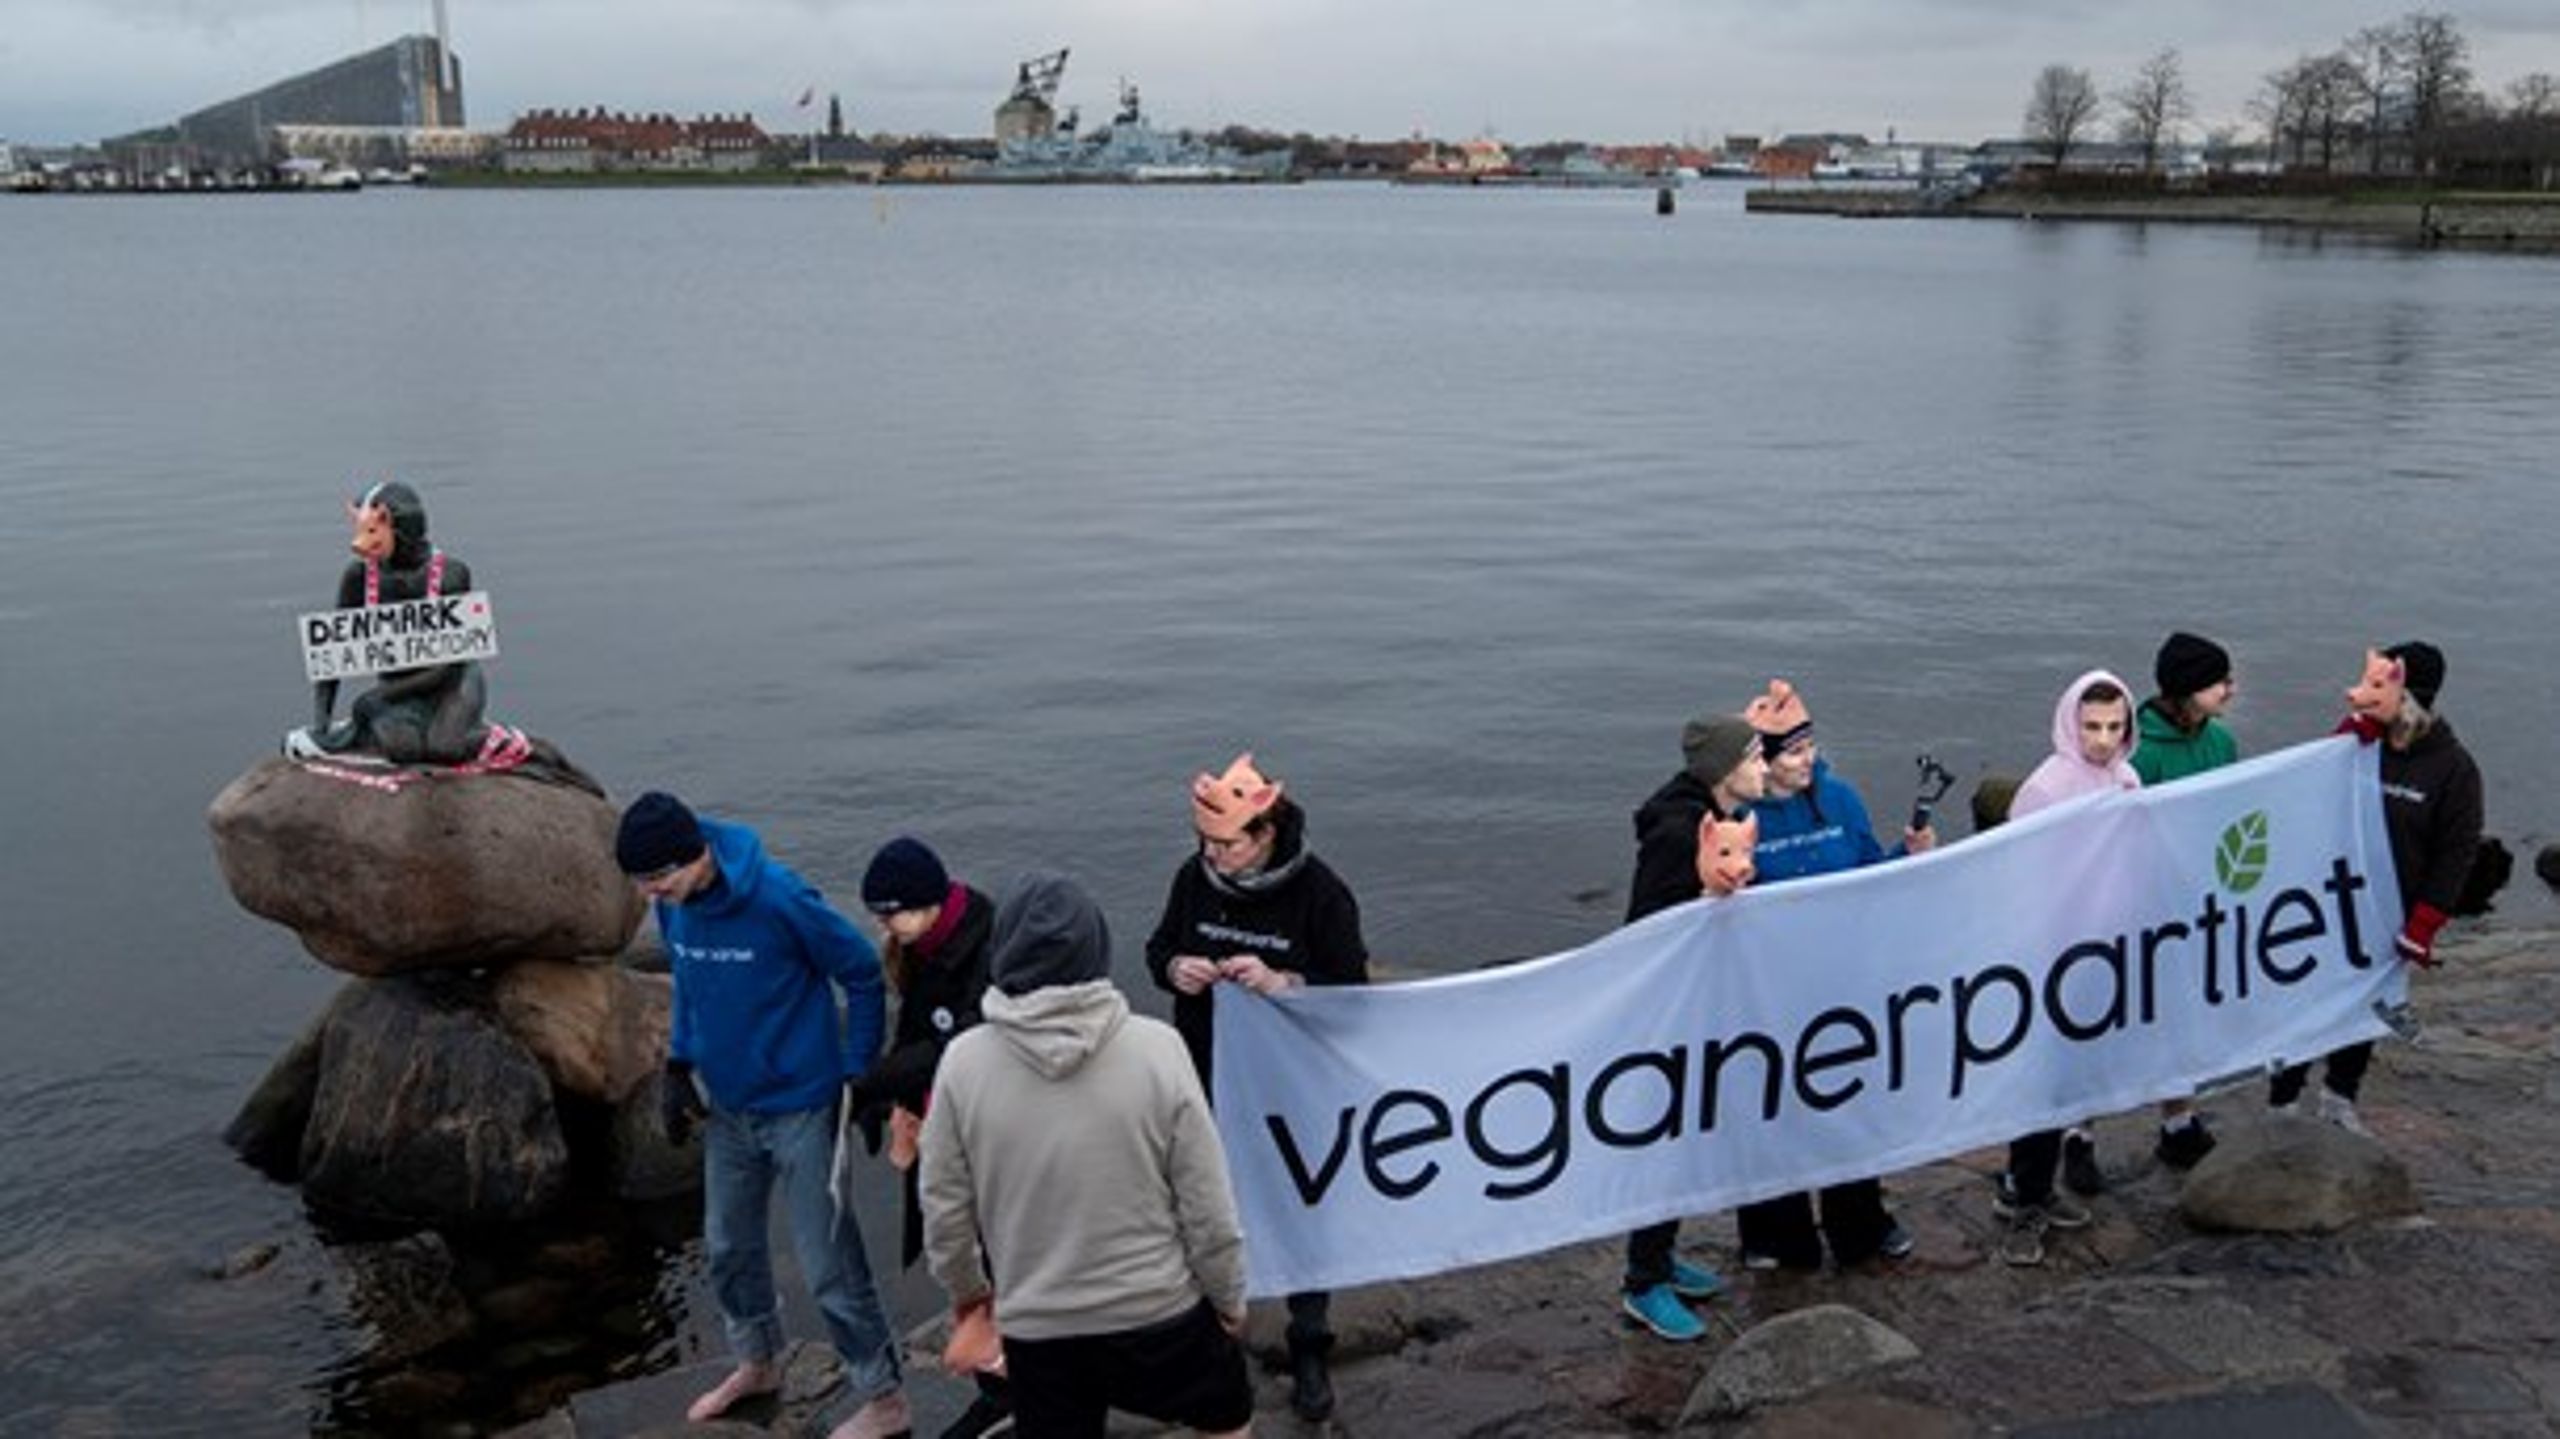 Veganerpartiet til en happening ved Den Lille Havfrue, som en protest mod pladsforholdende i den danske svineproduktion.